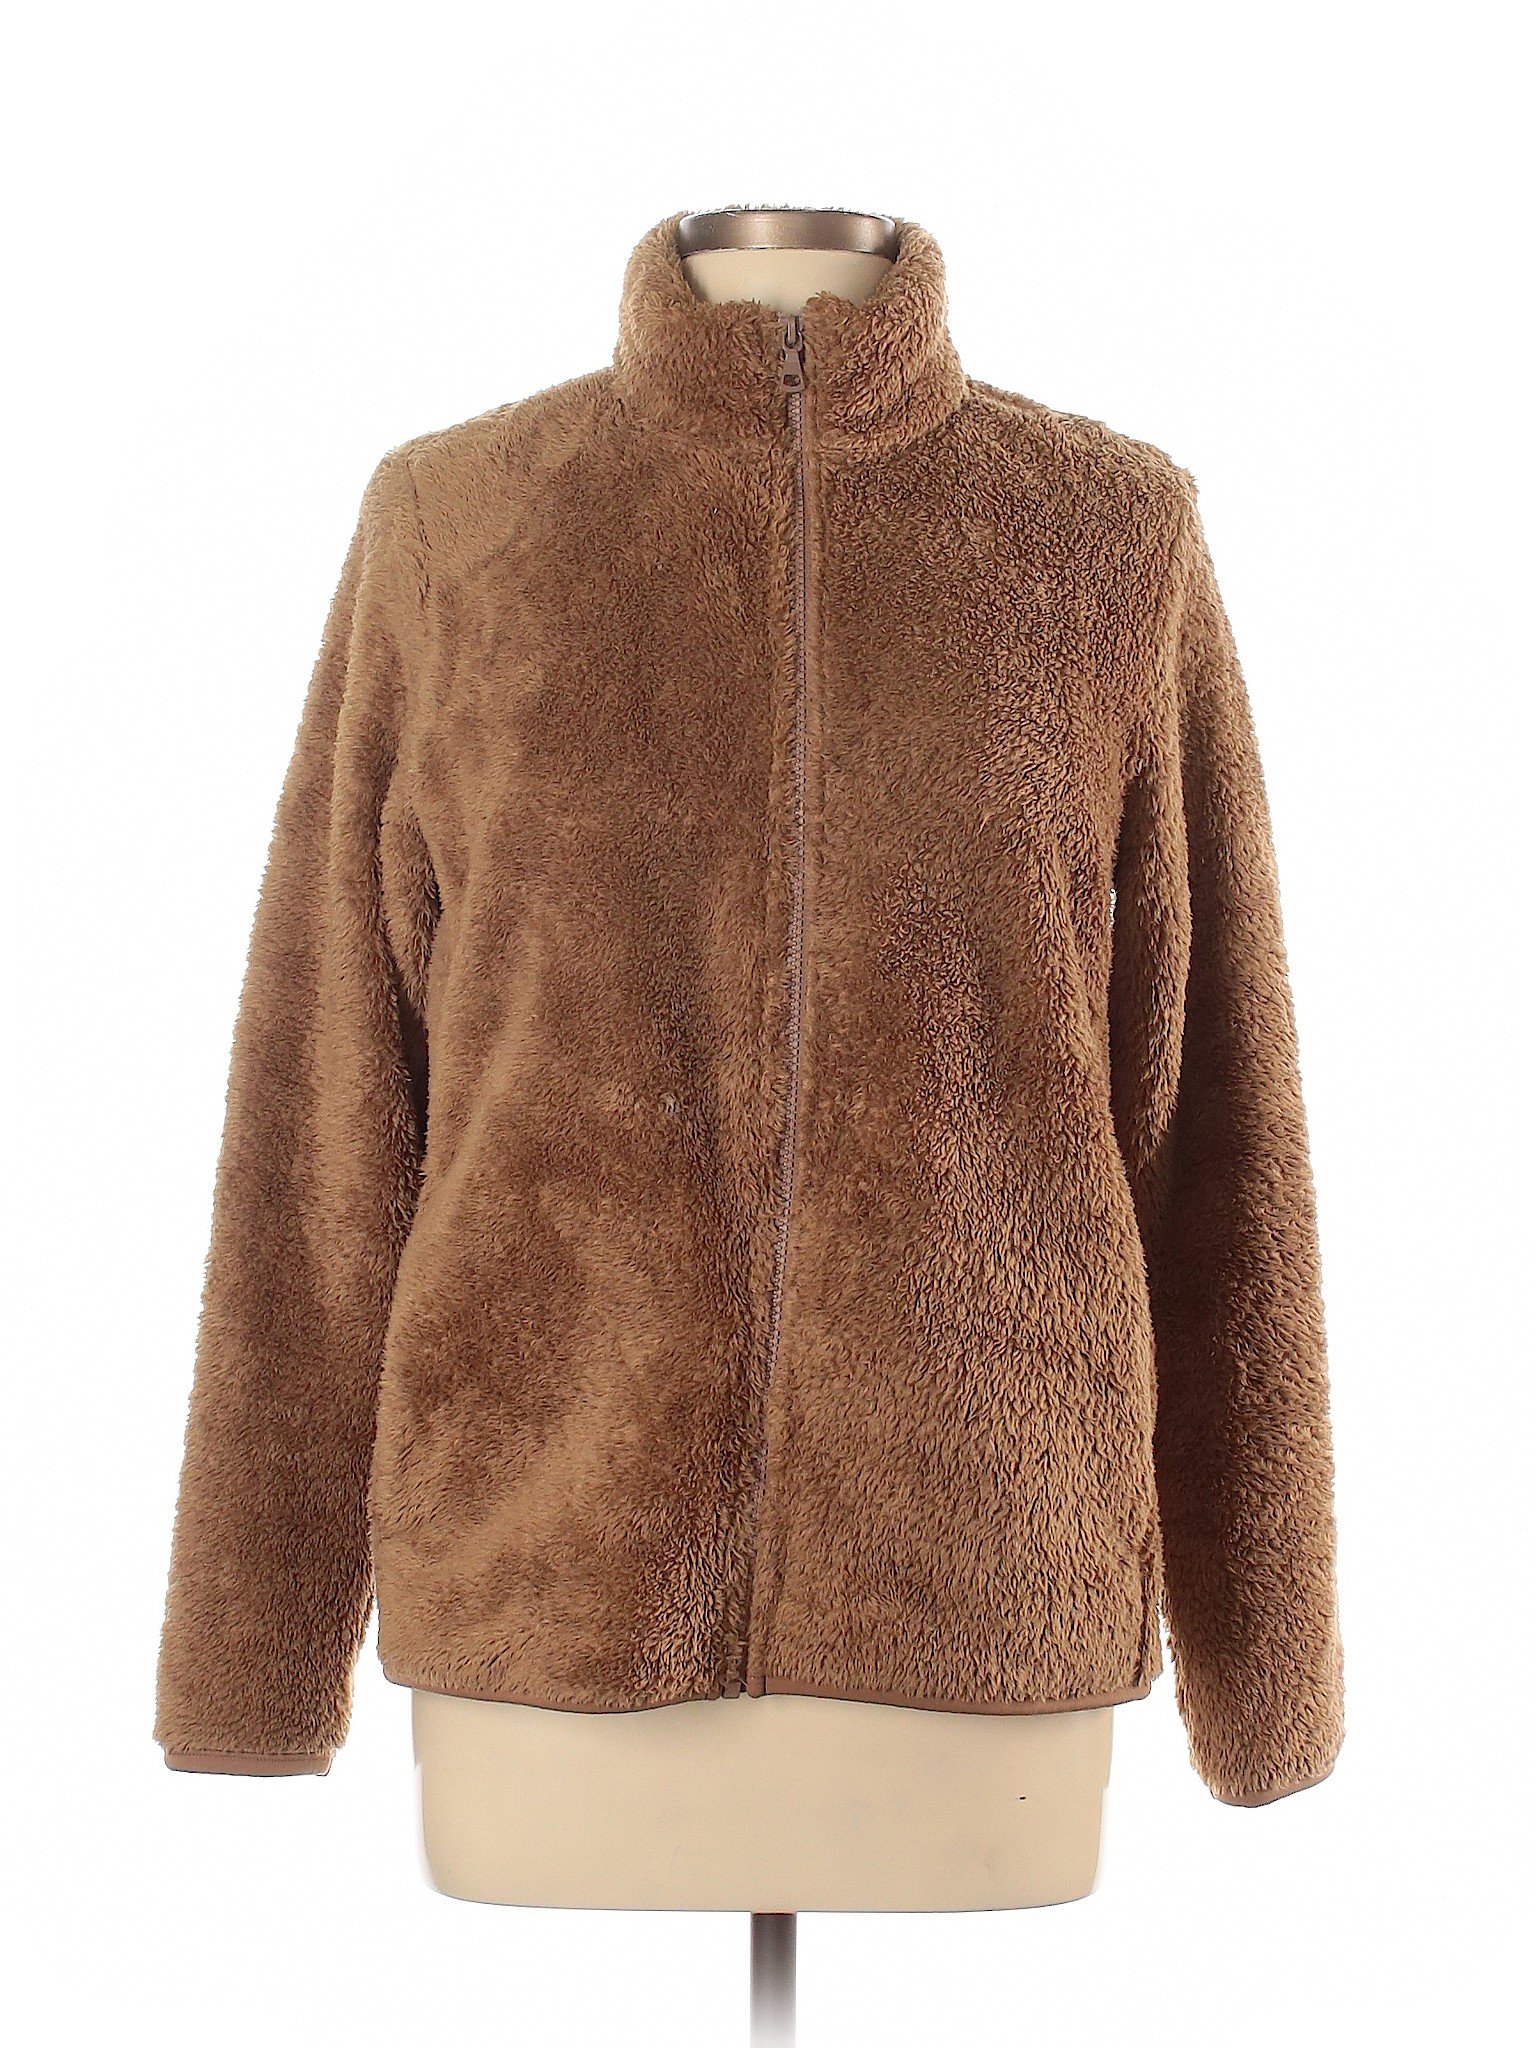 Uniqlo Women Brown Jacket L | eBay